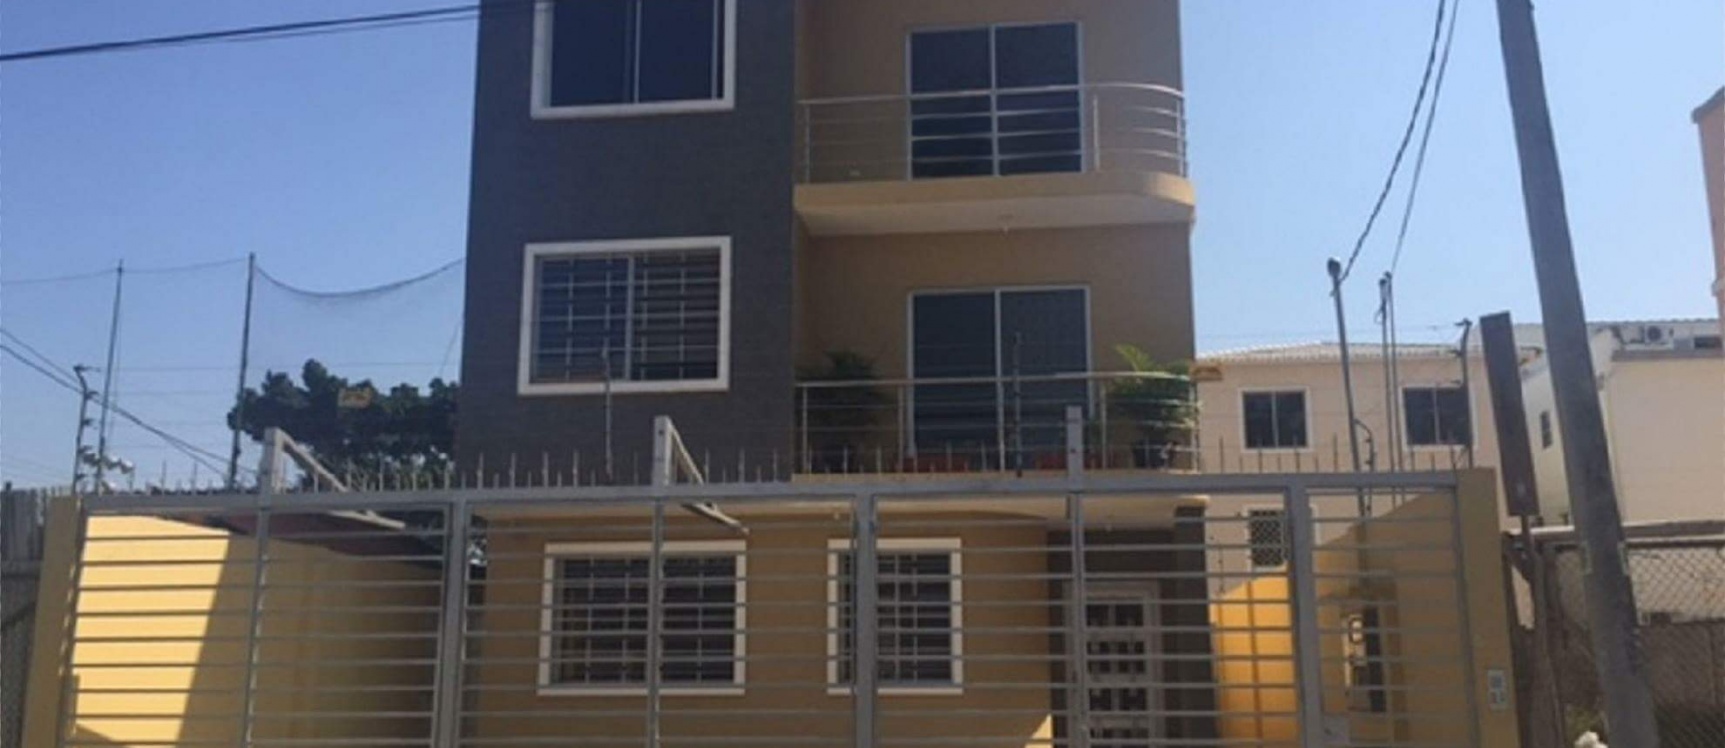 GeoBienes - Departamento en venta ubicado en La Garzota Guayaquil  - Plusvalia Guayaquil Casas de venta y alquiler Inmobiliaria Ecuador